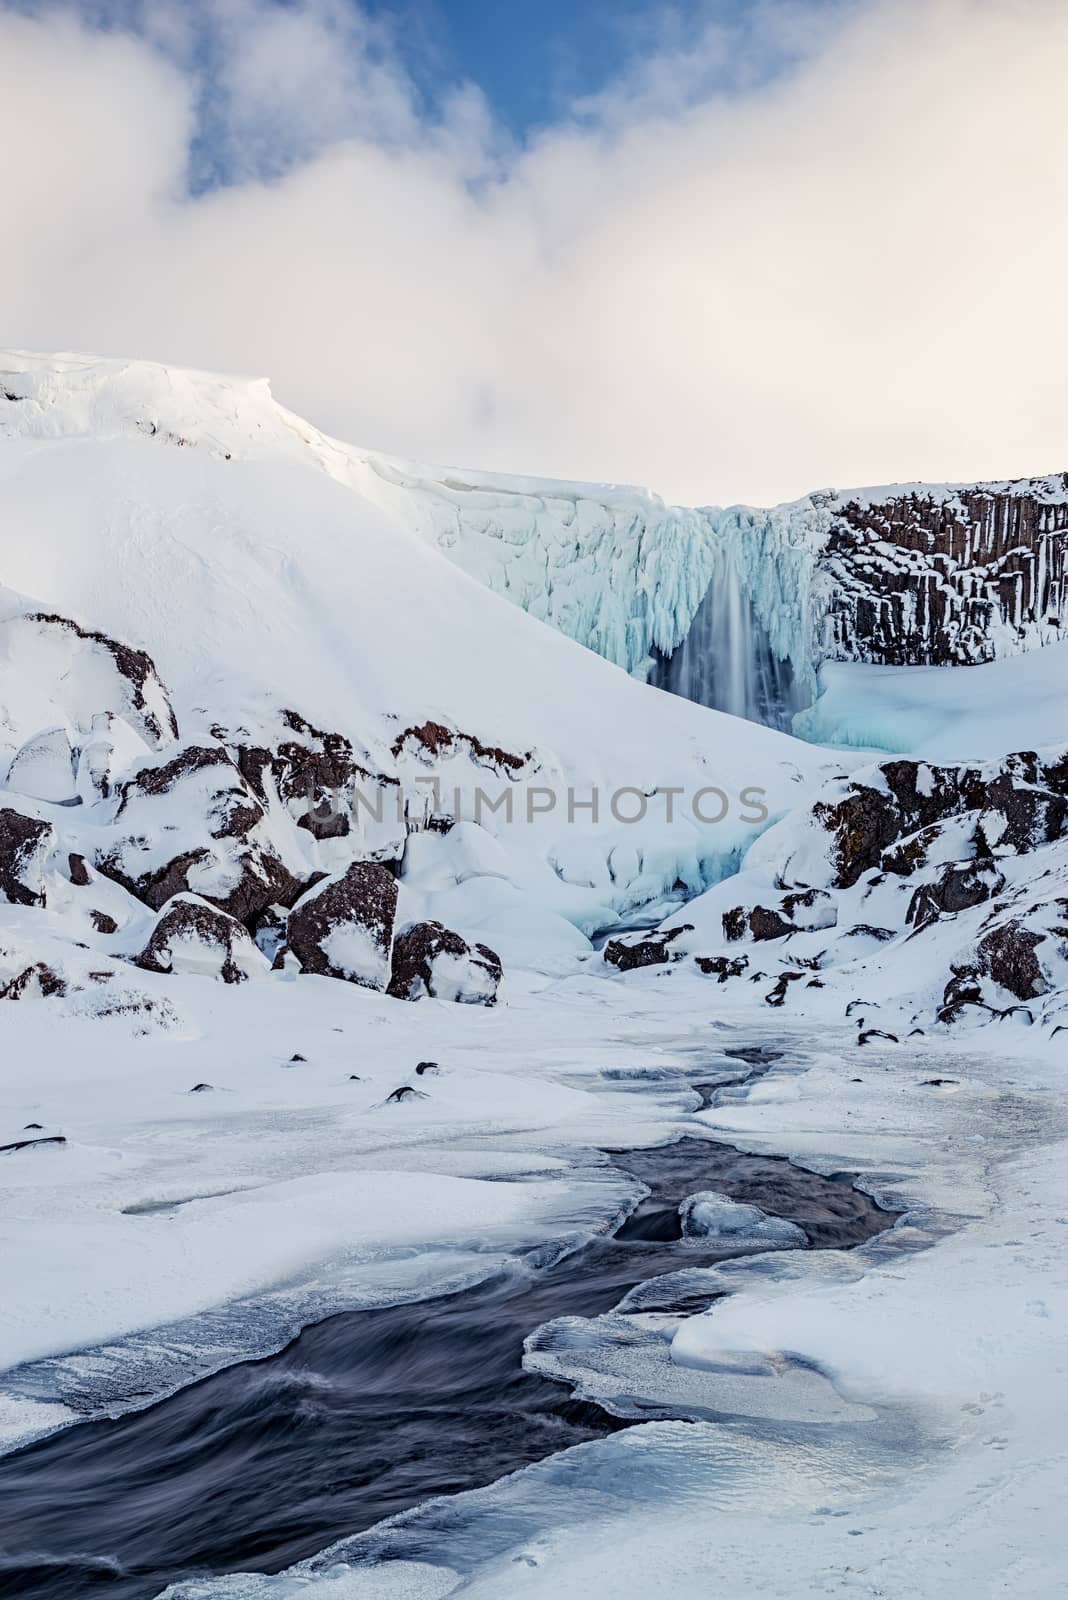 Svodufoss waterfall, Iceland by LuigiMorbidelli